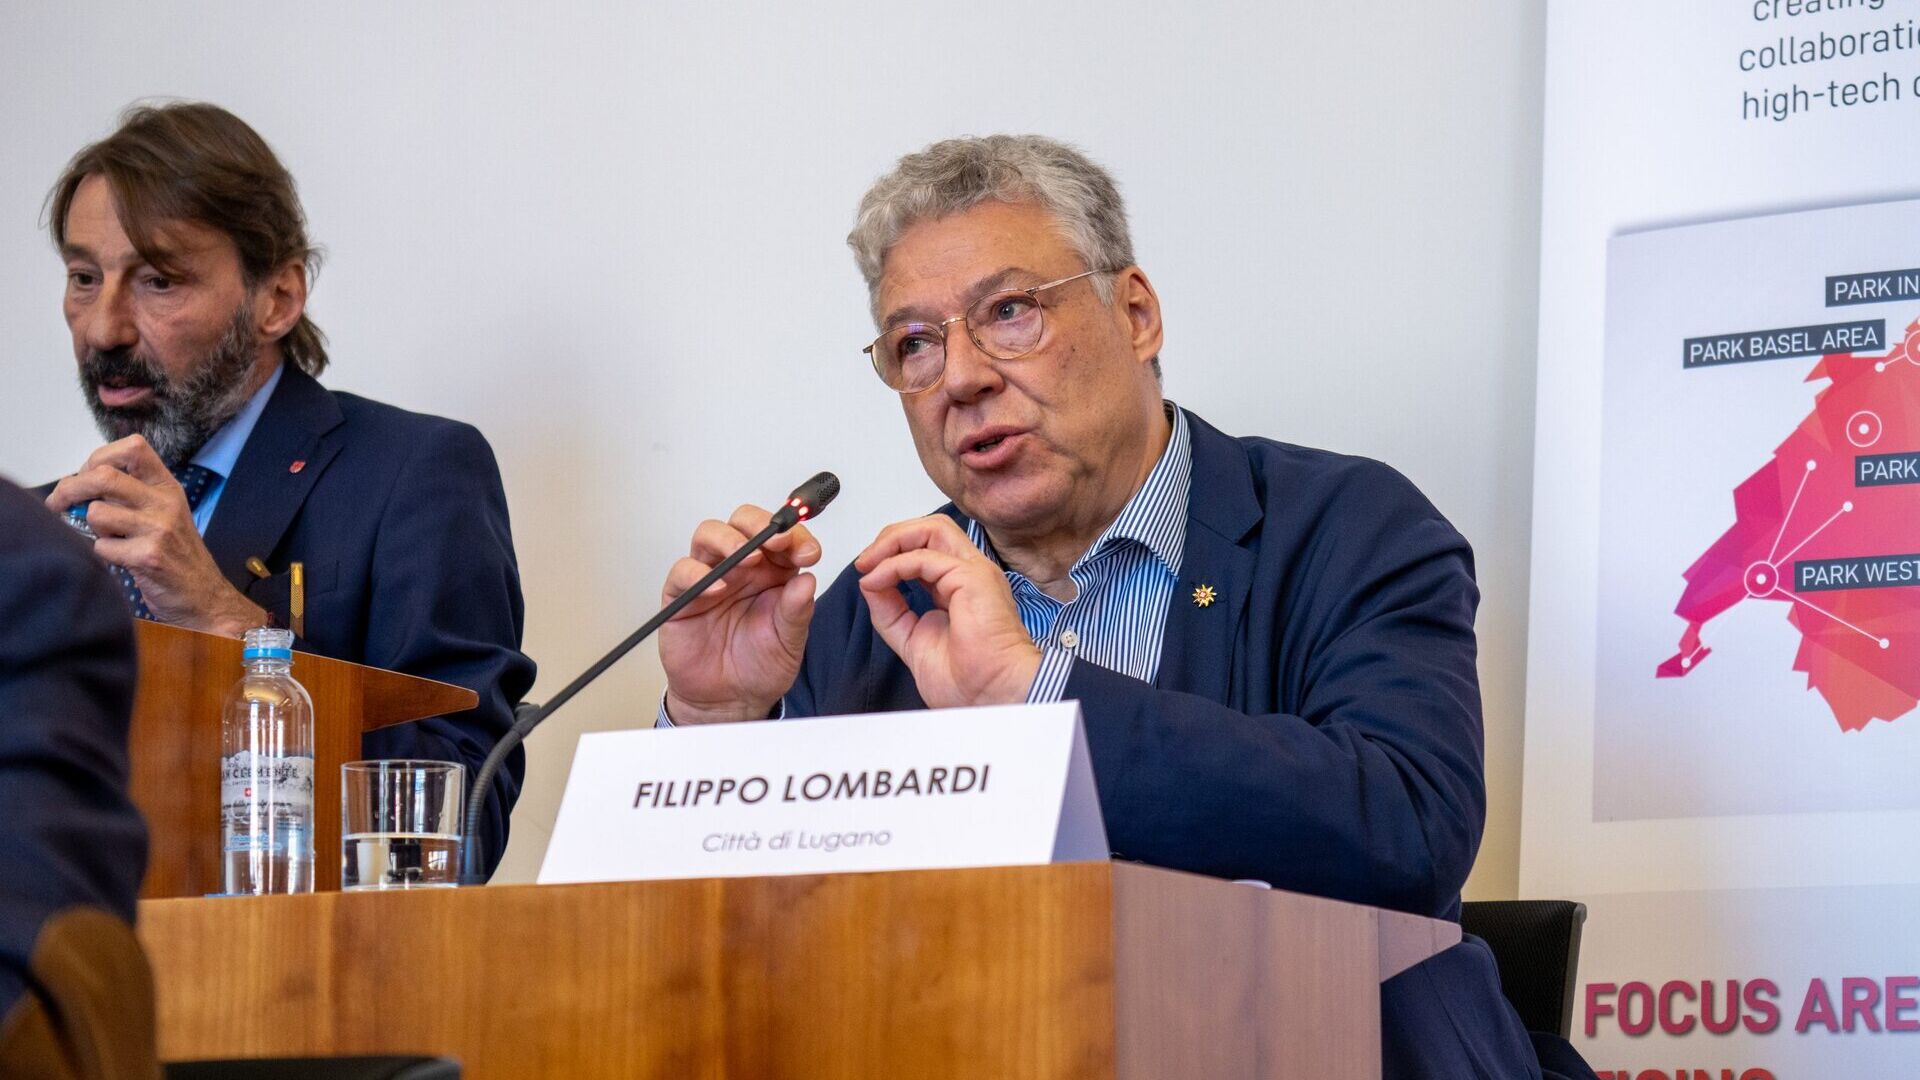 LTCC: Filippo Lombardi je gradski vijećnik i načelnik Odjela za teritorijalni razvoj grada Lugana